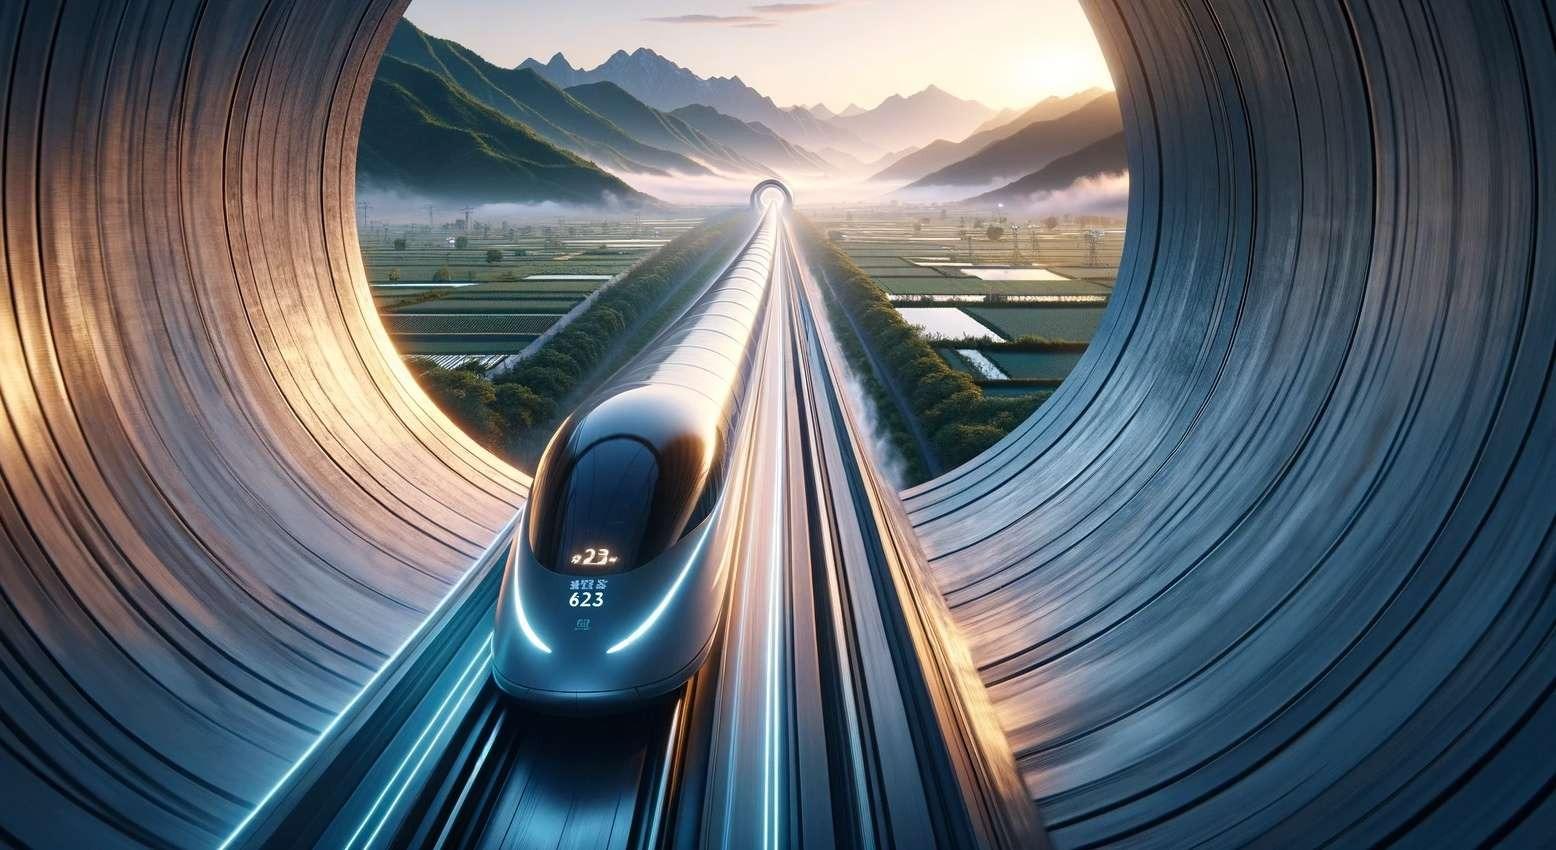 prototype train maglev - China bricht Geschwindigkeitsrekord mit Maglev-Zug in Kombination mit Hyperloop